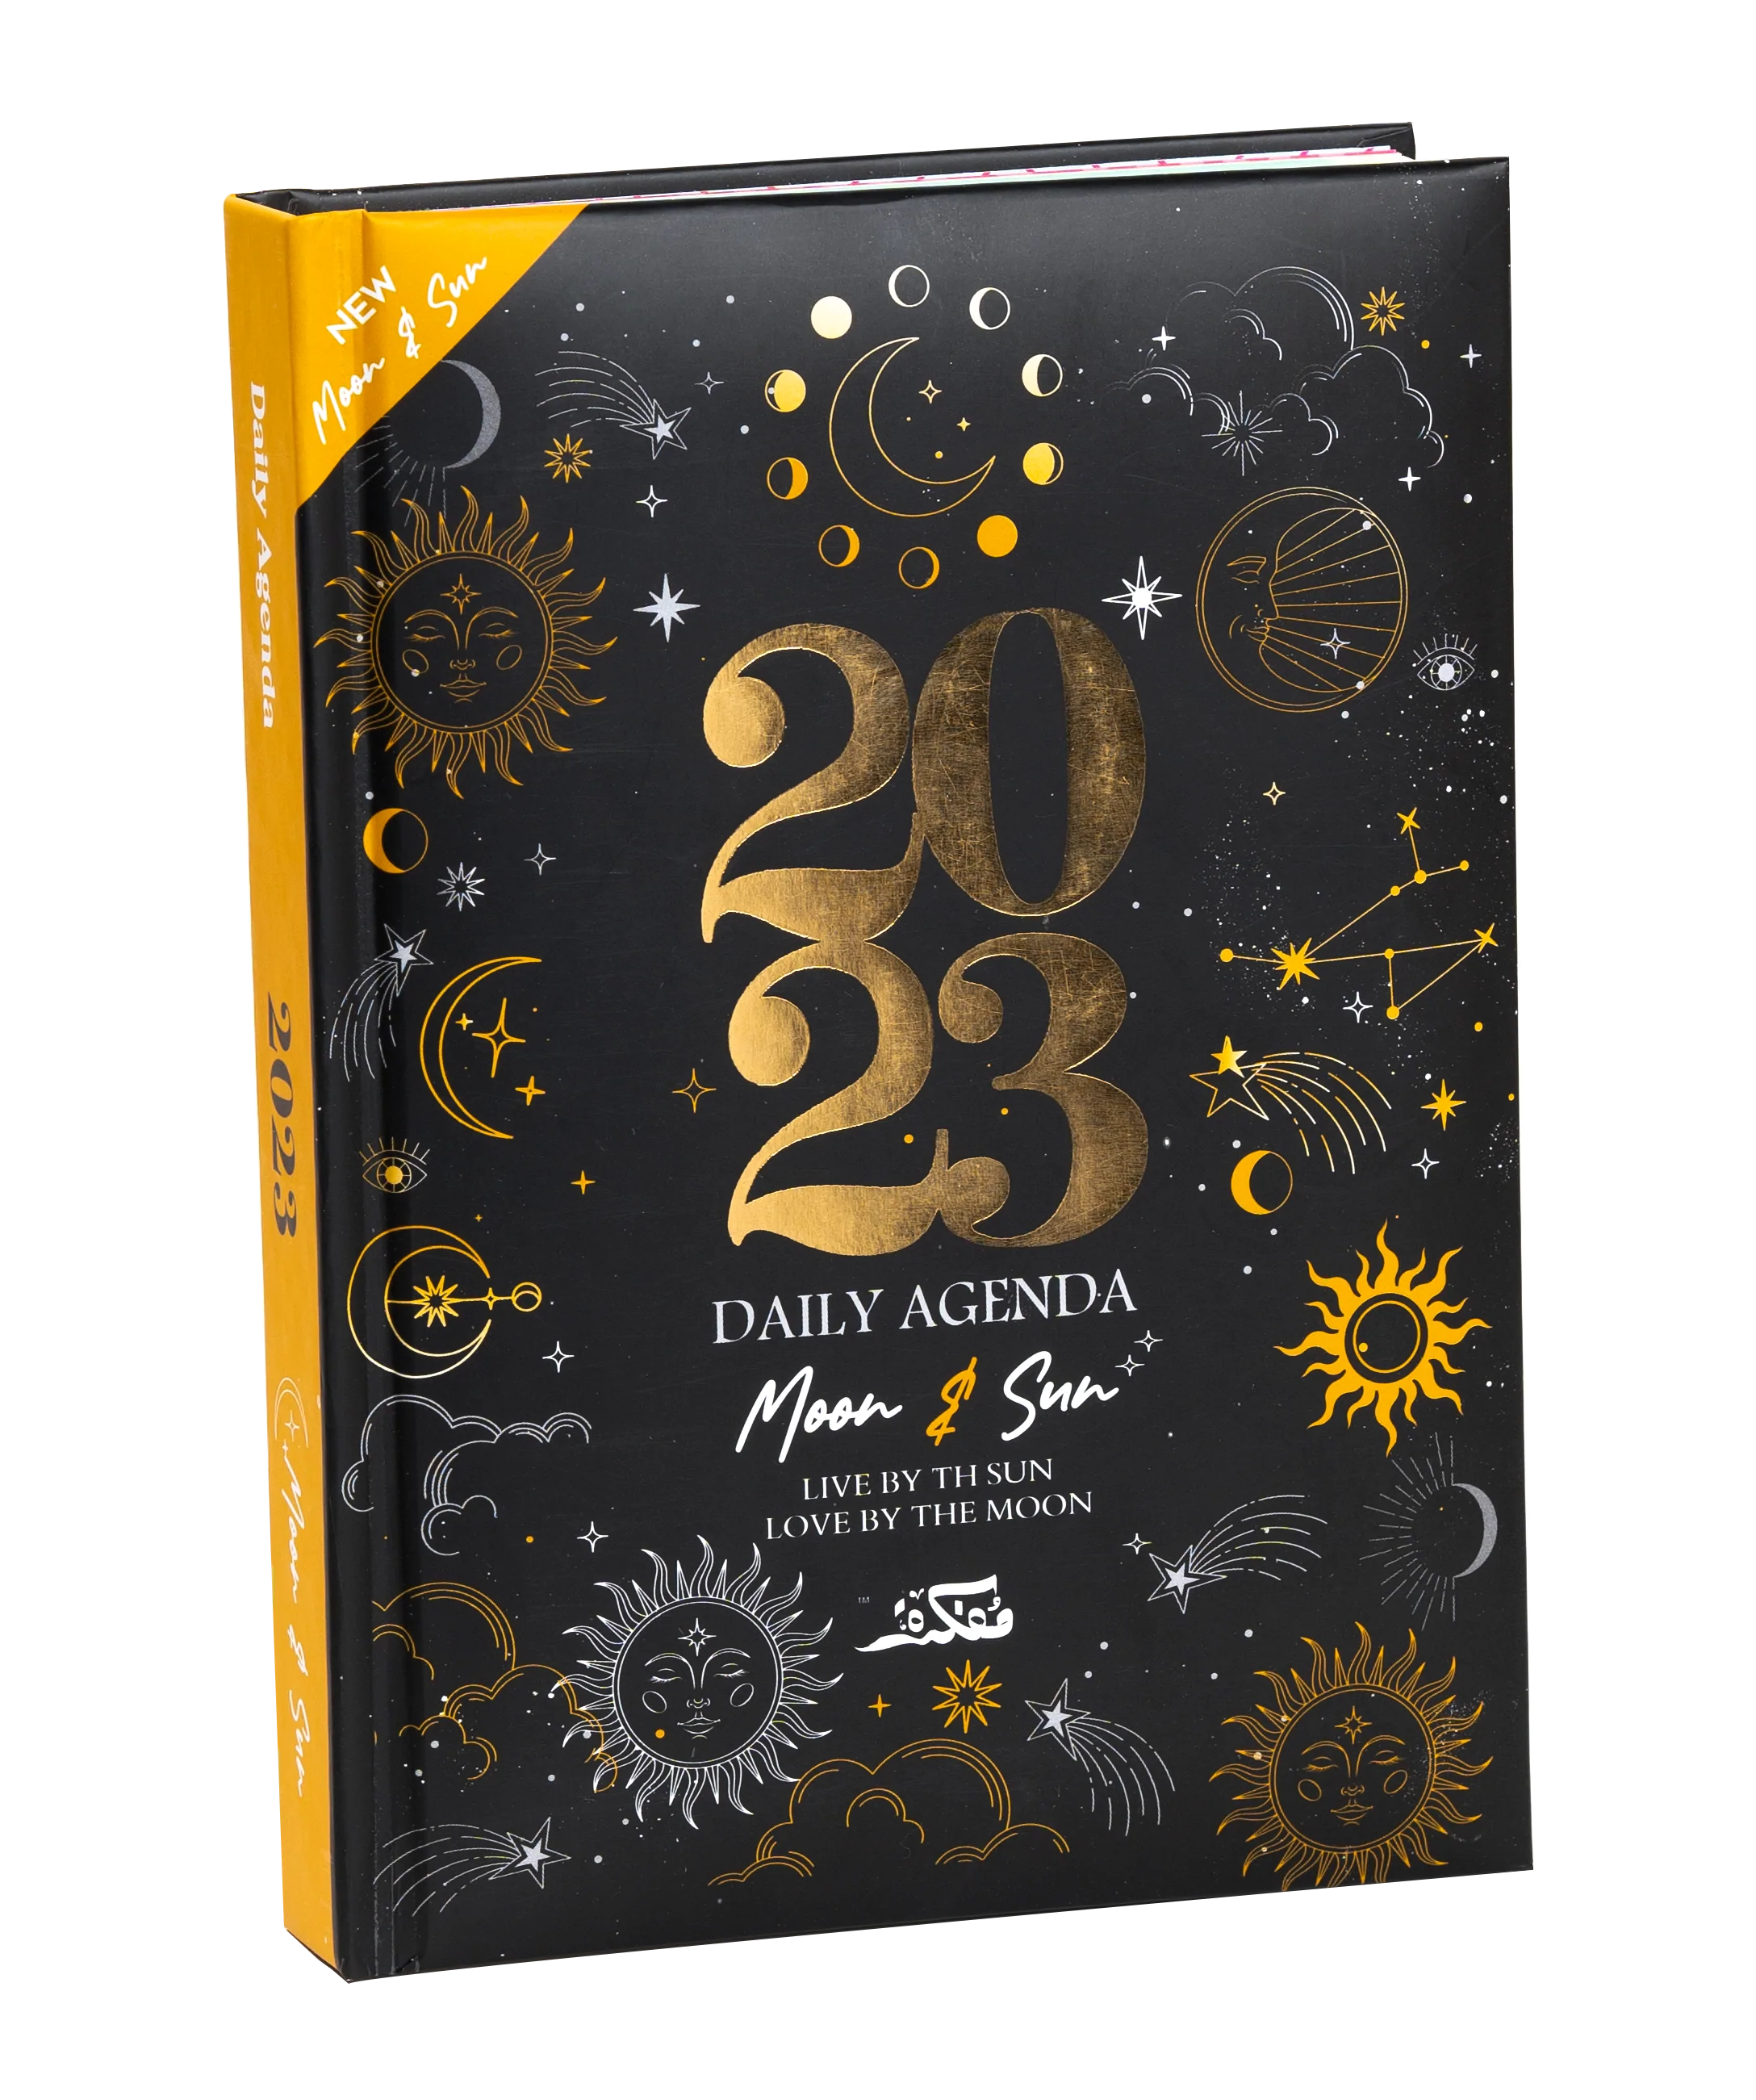 Fairuzy - Agenda Only 2023 - Moon & Sun